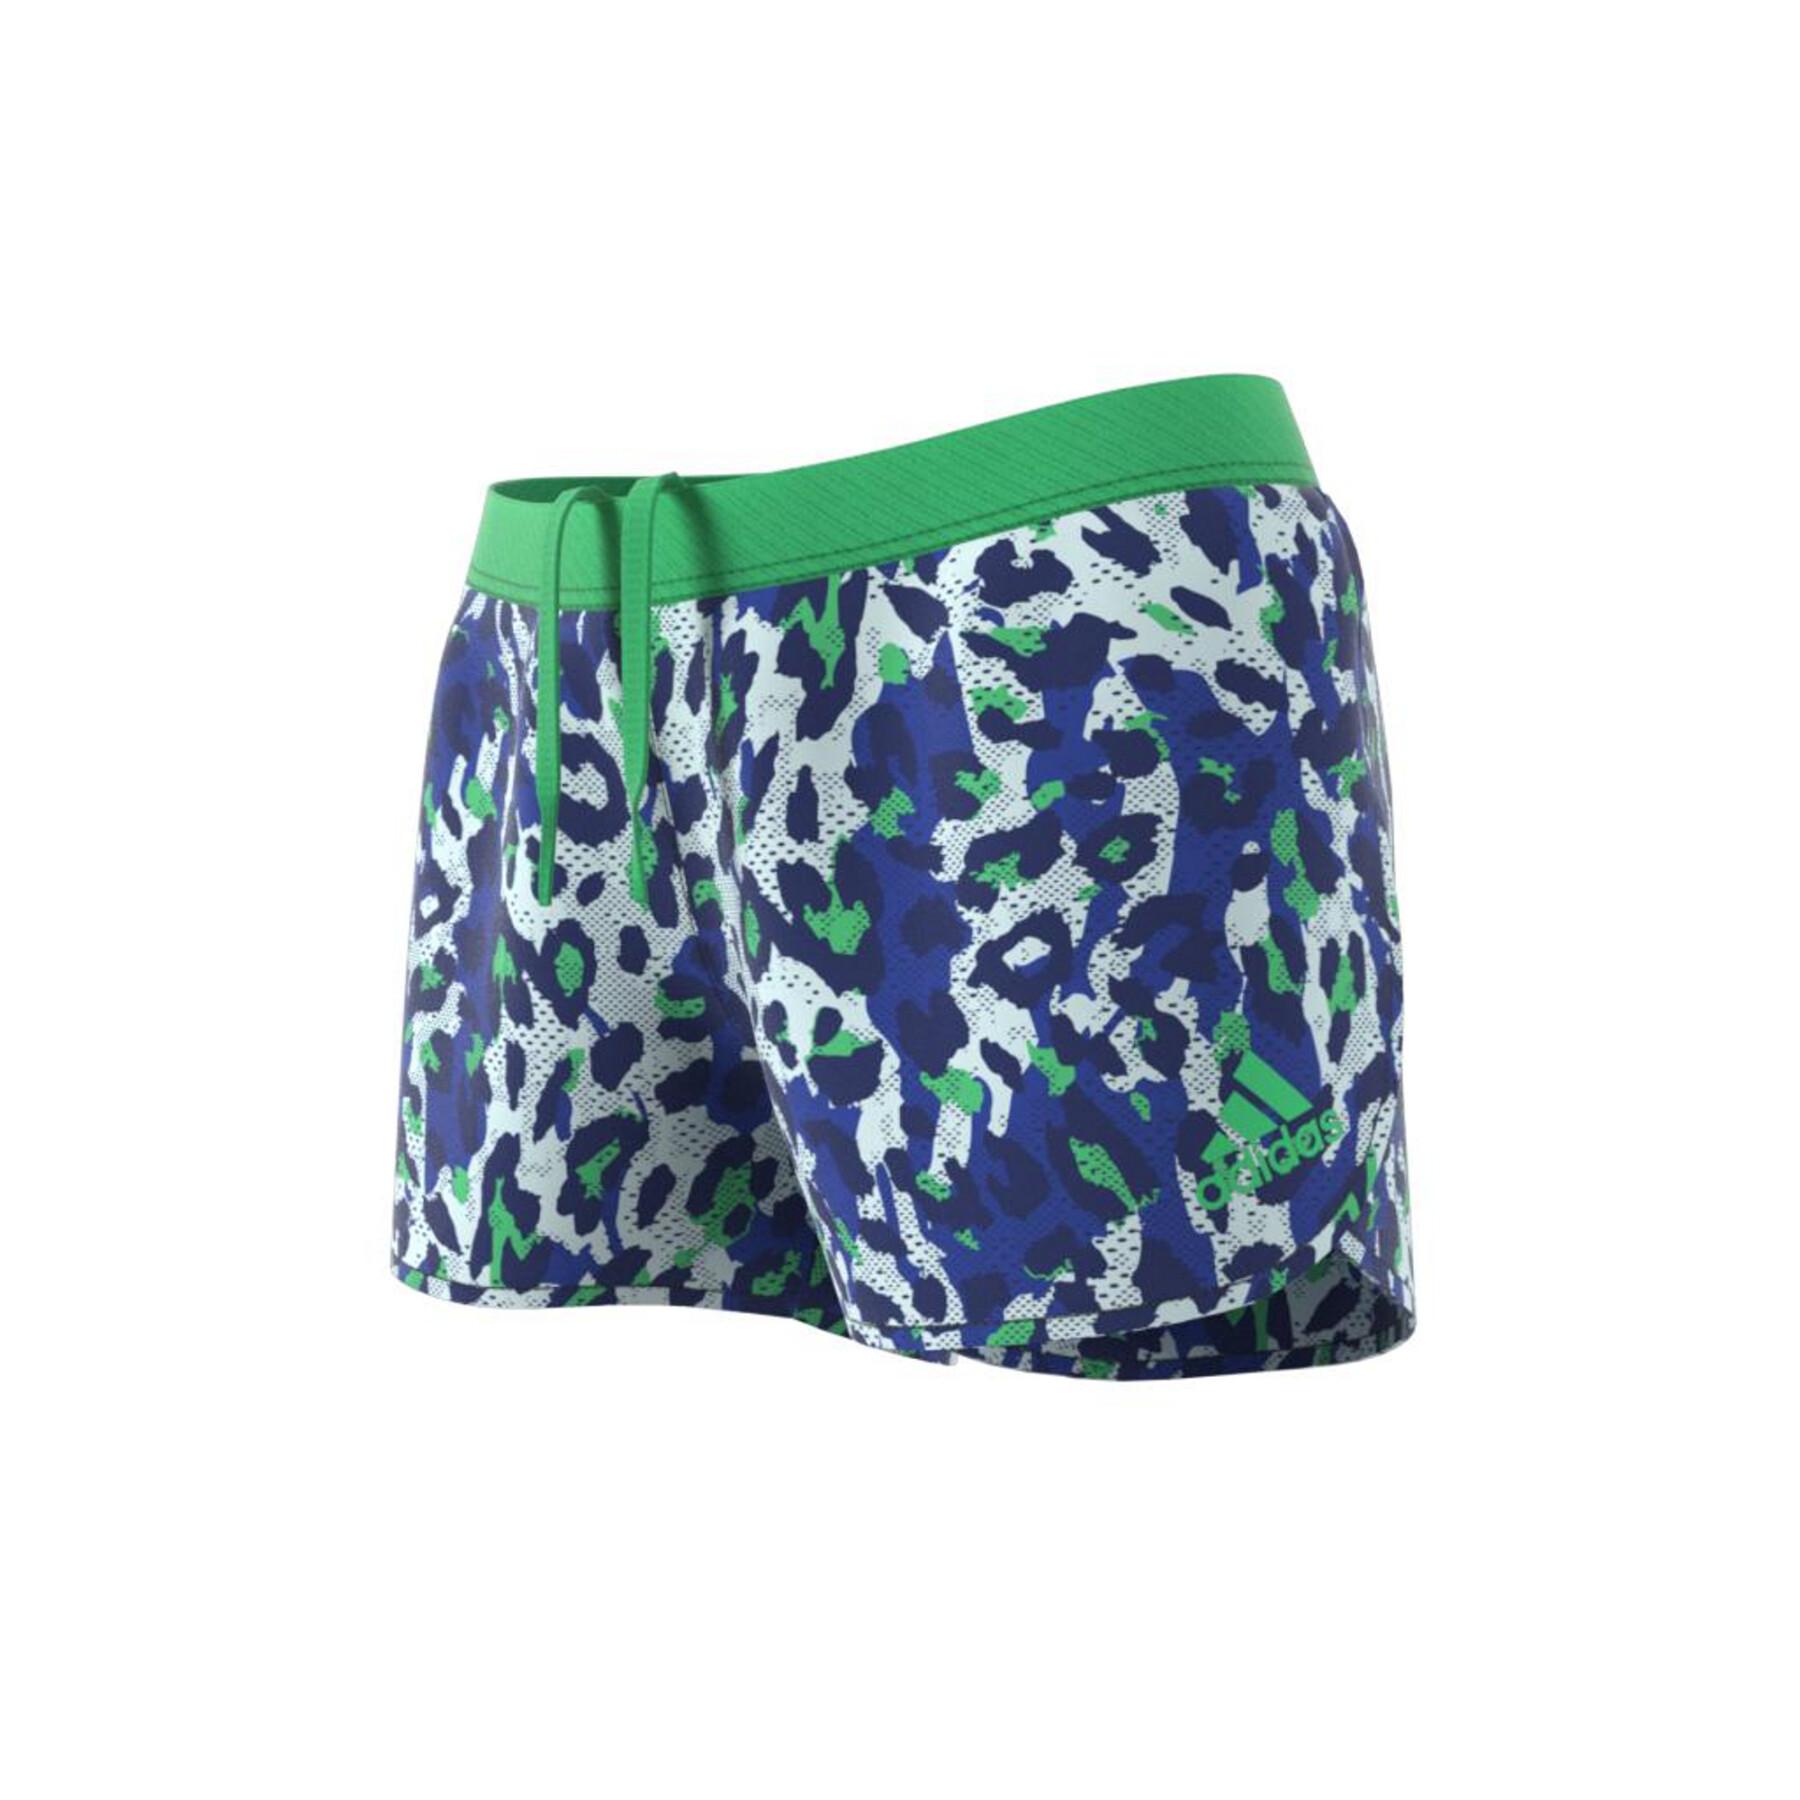 Damen-Shorts adidas Adizero Split